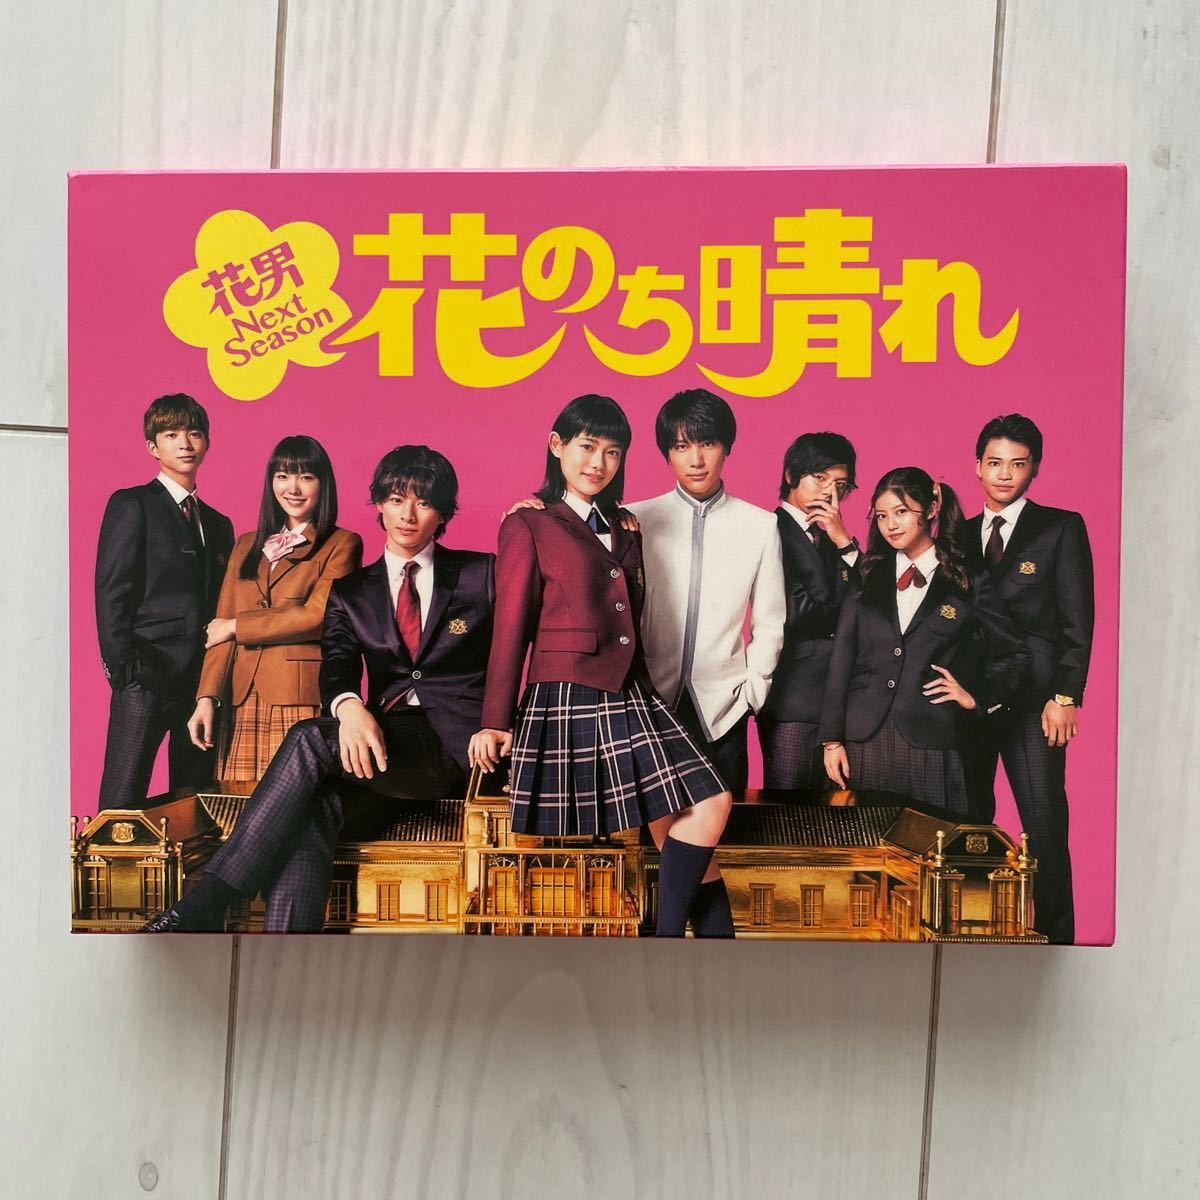 高価値セリー 花のち晴れ DVD-BOX アート/エンタメ/ホビー